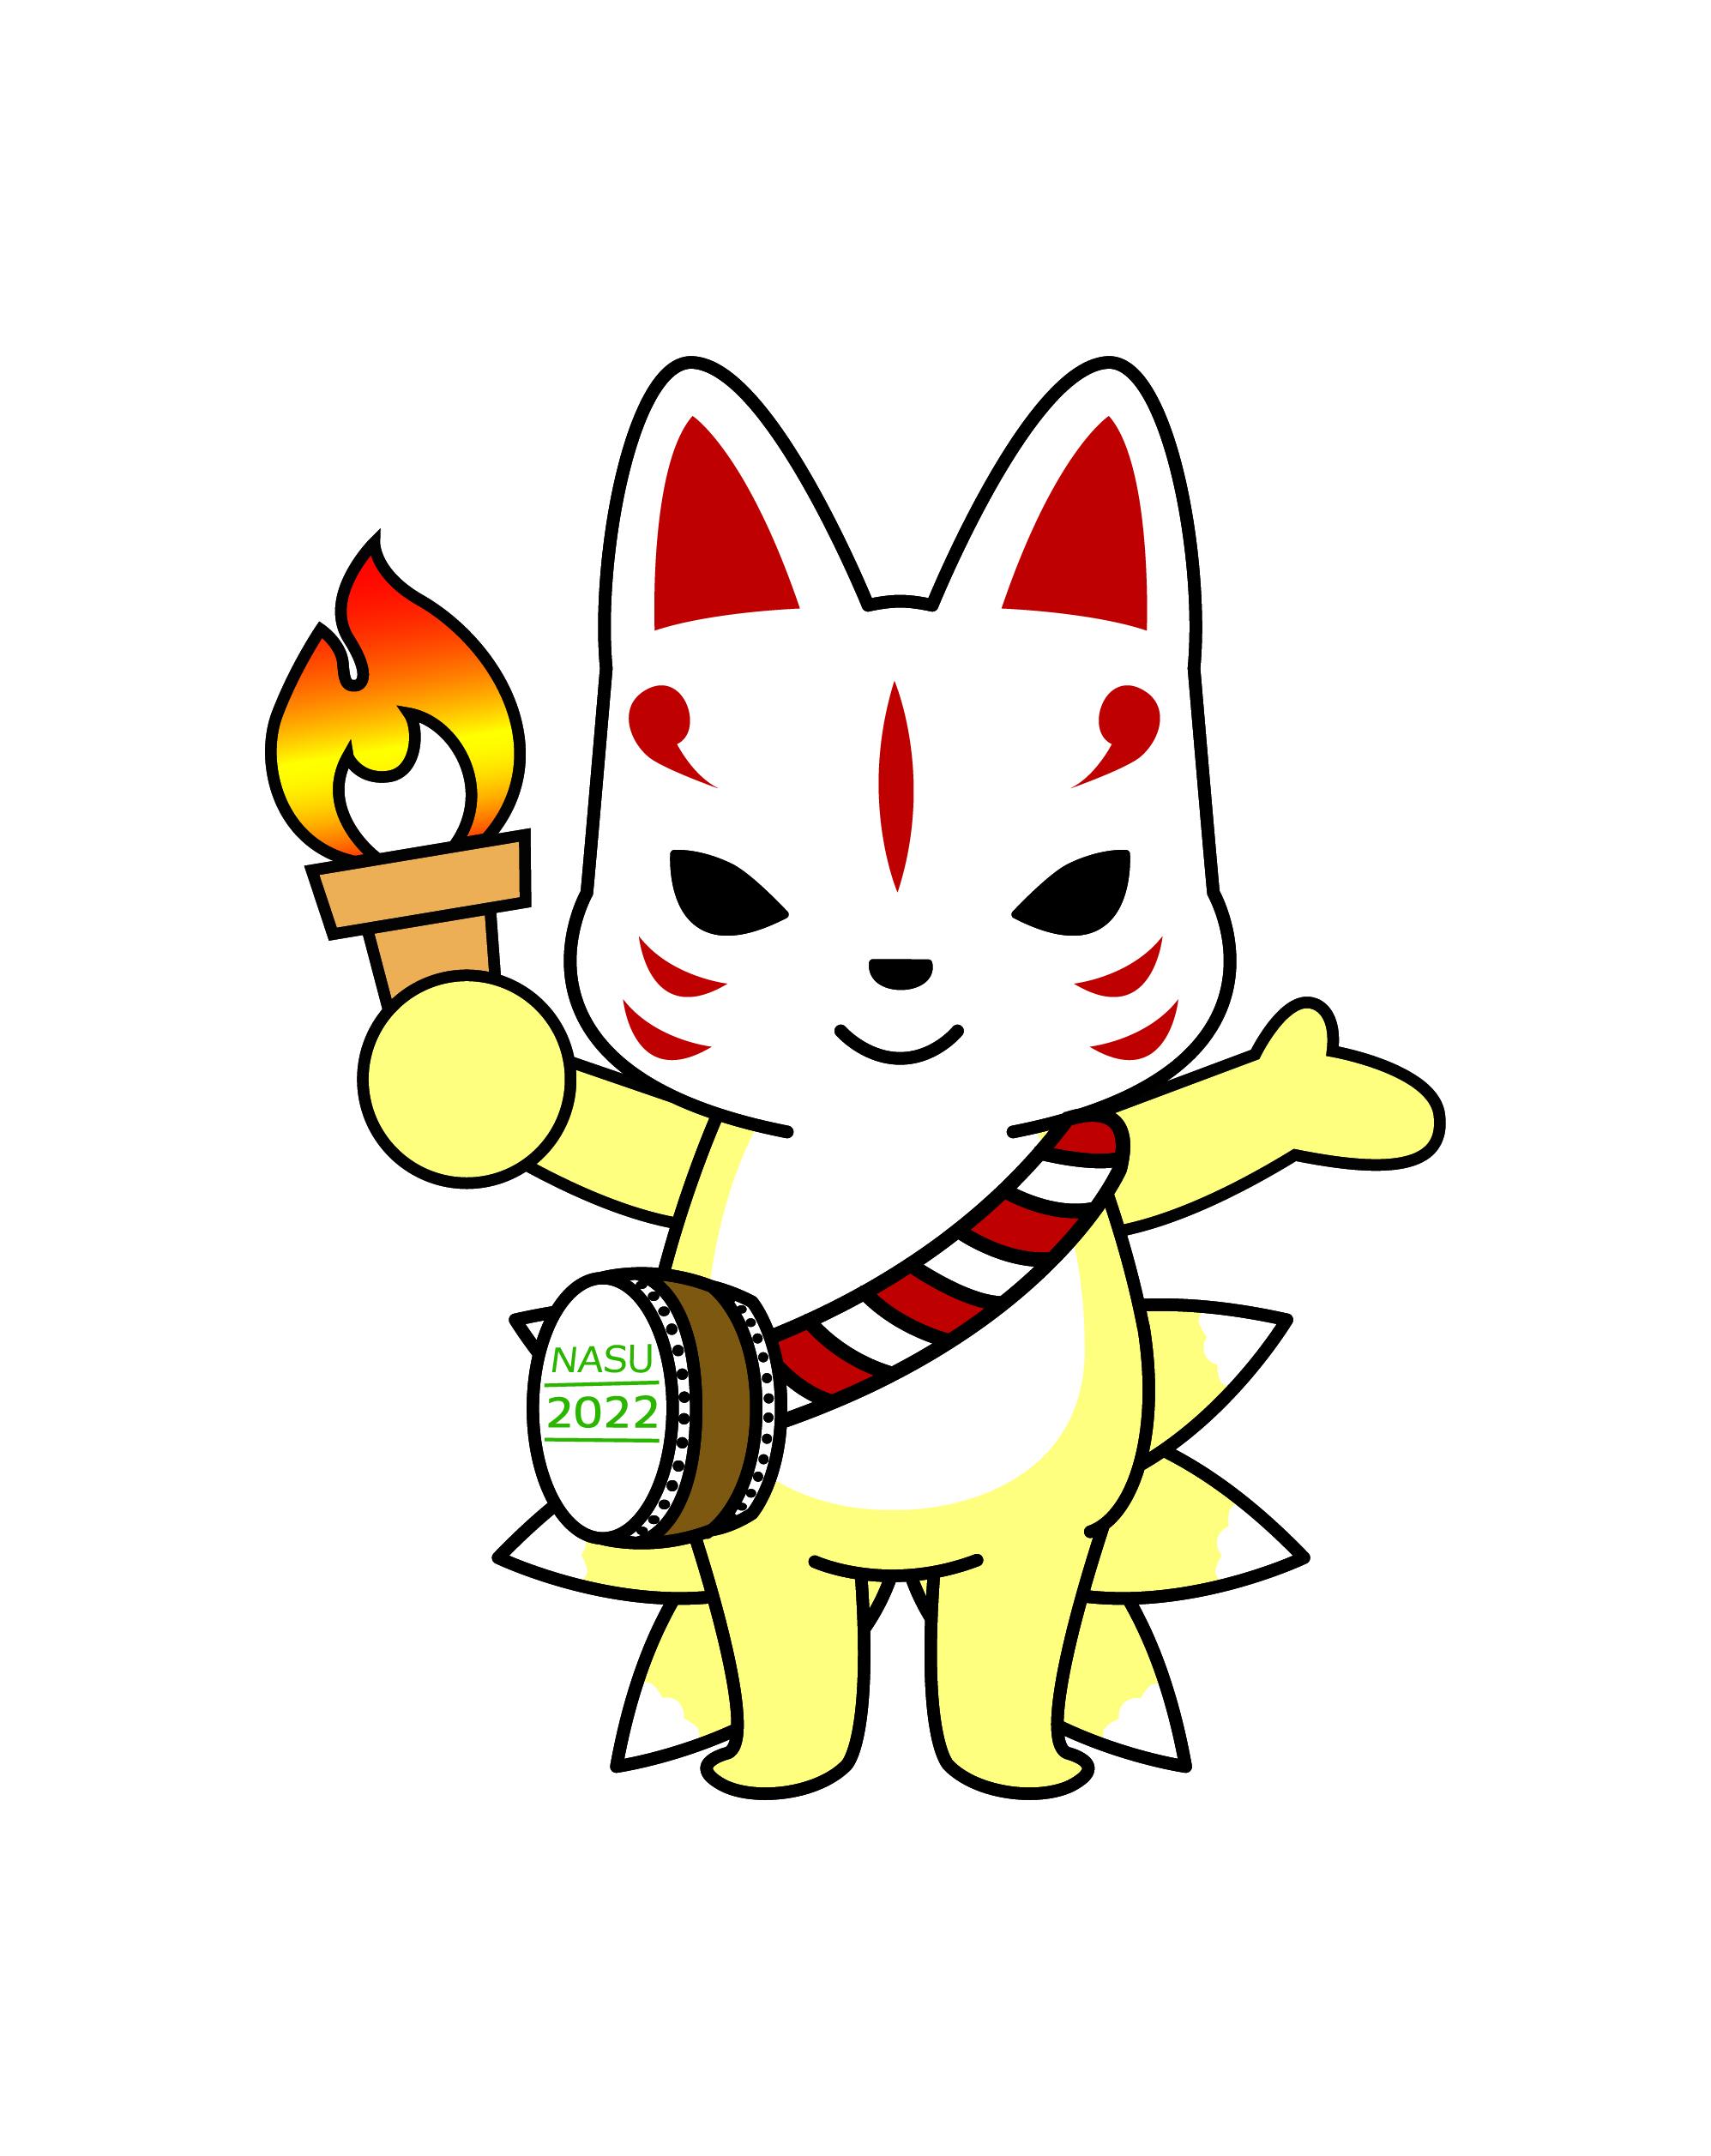 本日（6月12日）の炬火イベント「マイギリ式で芦野の火を起こそう」は予定どおり実施いたします。